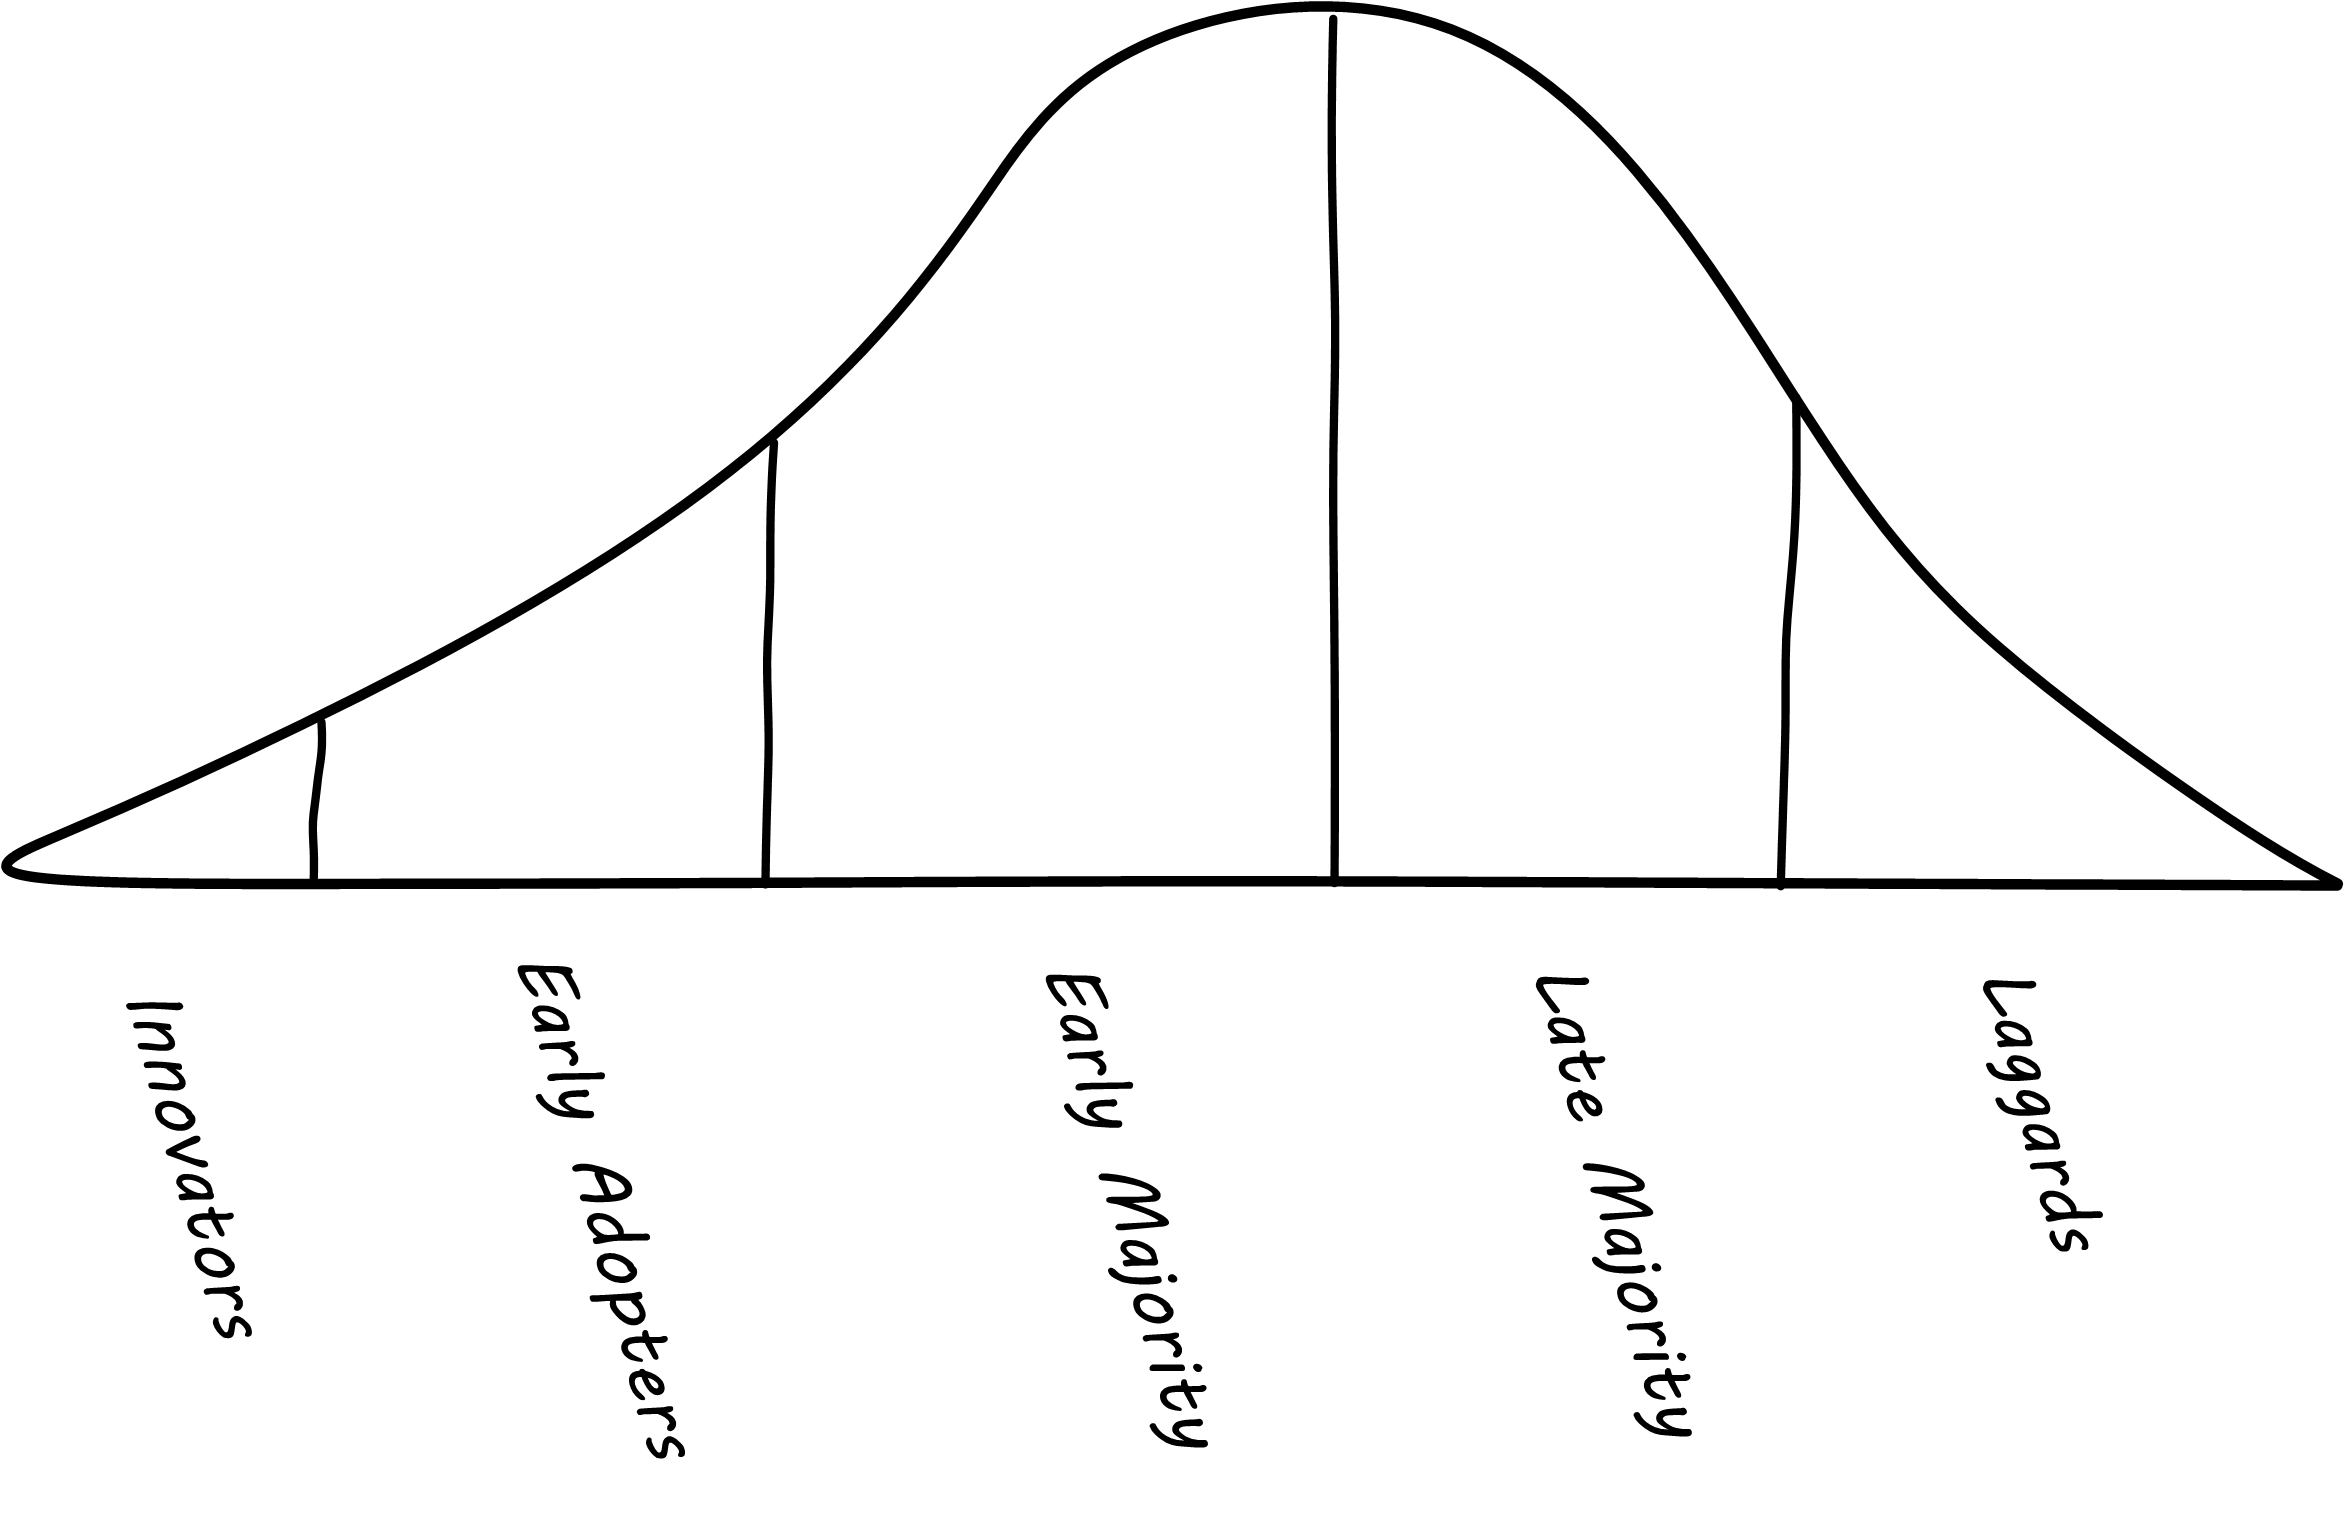 diffusion-graph